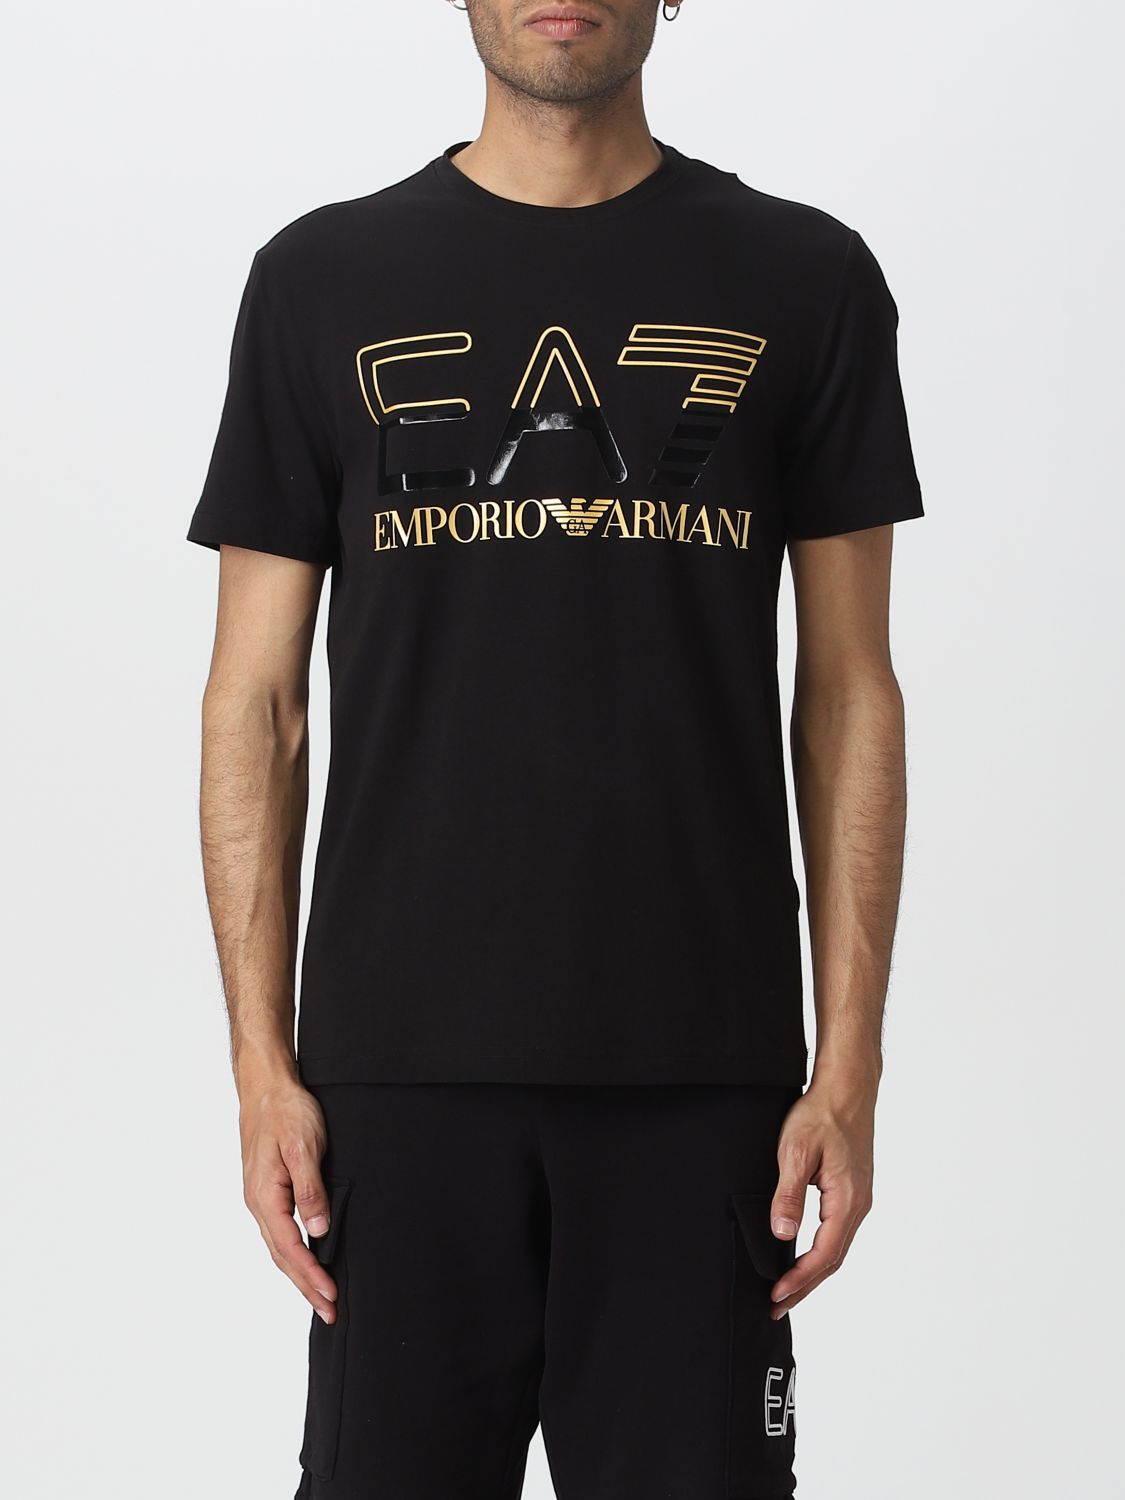 forlade Låne sagtmodighed EA7: t-shirt for man - Black 1 | Ea7 t-shirt 3RPT07PJLBZ online at  GIGLIO.COM